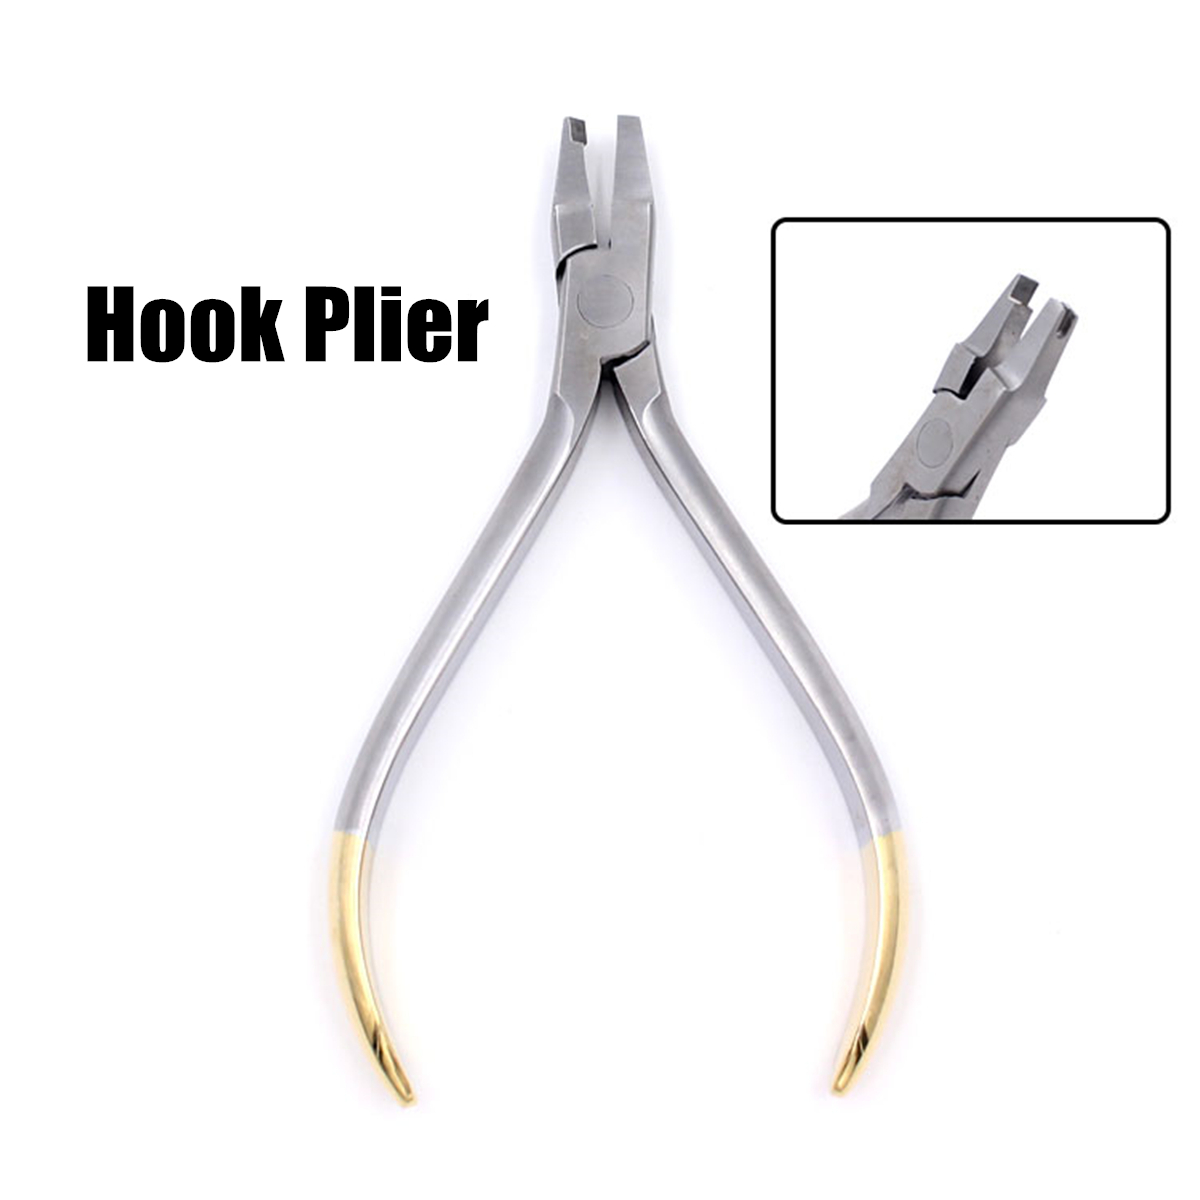 Dental-Orthodontic-Forceps-Pliers-Tool-Cutter-End-Distal-Wires-Bending-Plier-KIM-Teeth-1439156-7